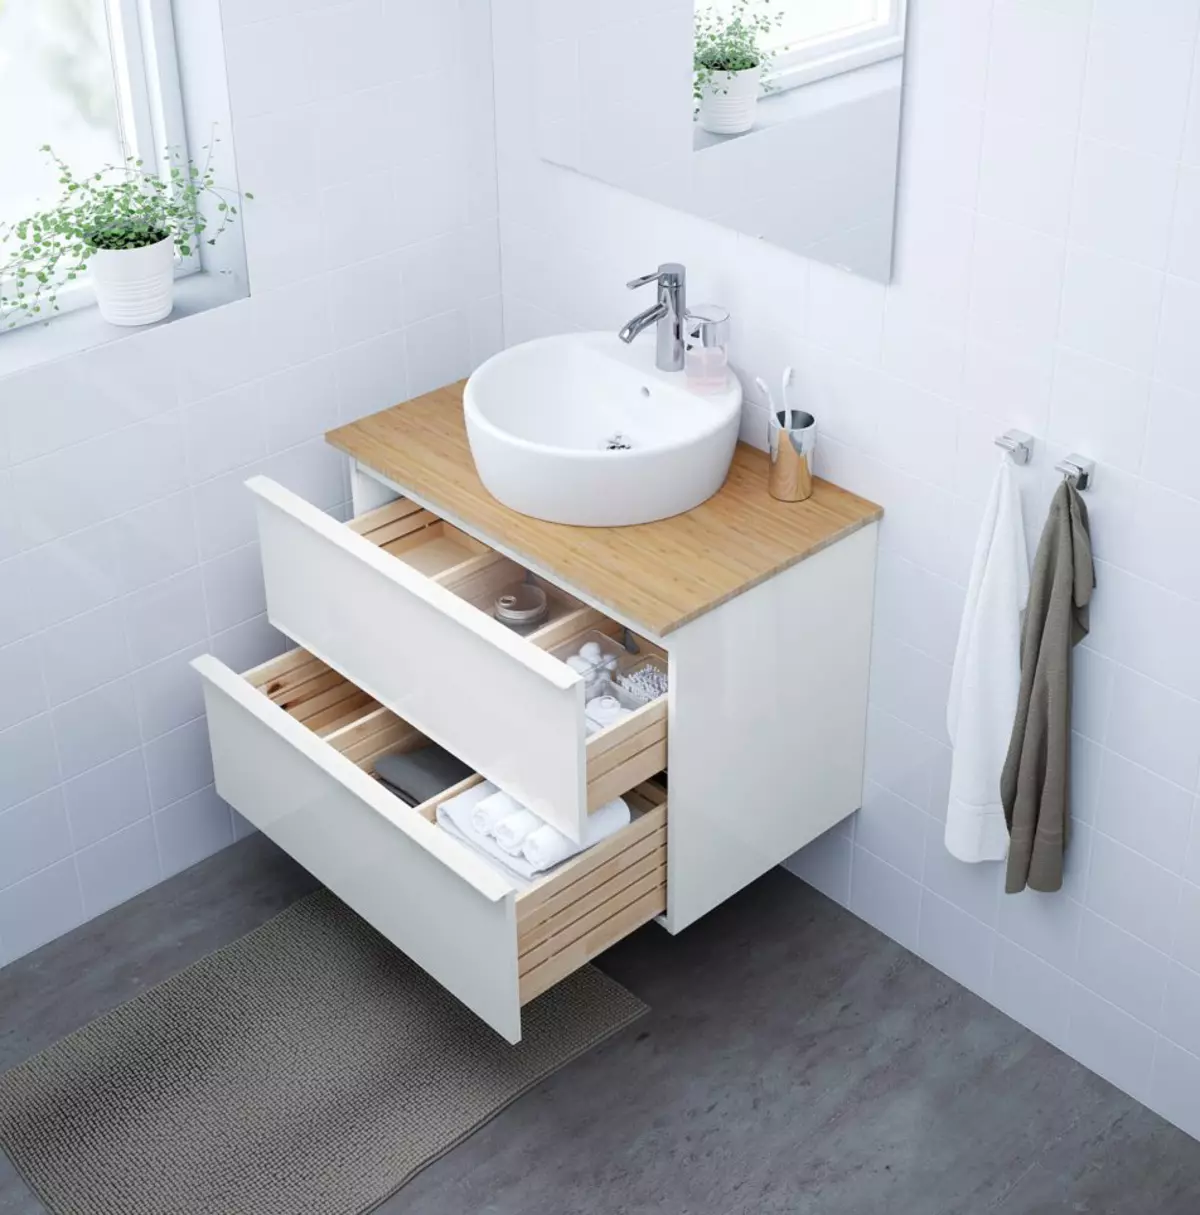 Bany Suports: Taules Varietats de bany, IKEA Marca Descripció general i altres, suports de fusta i Altres 10150_40